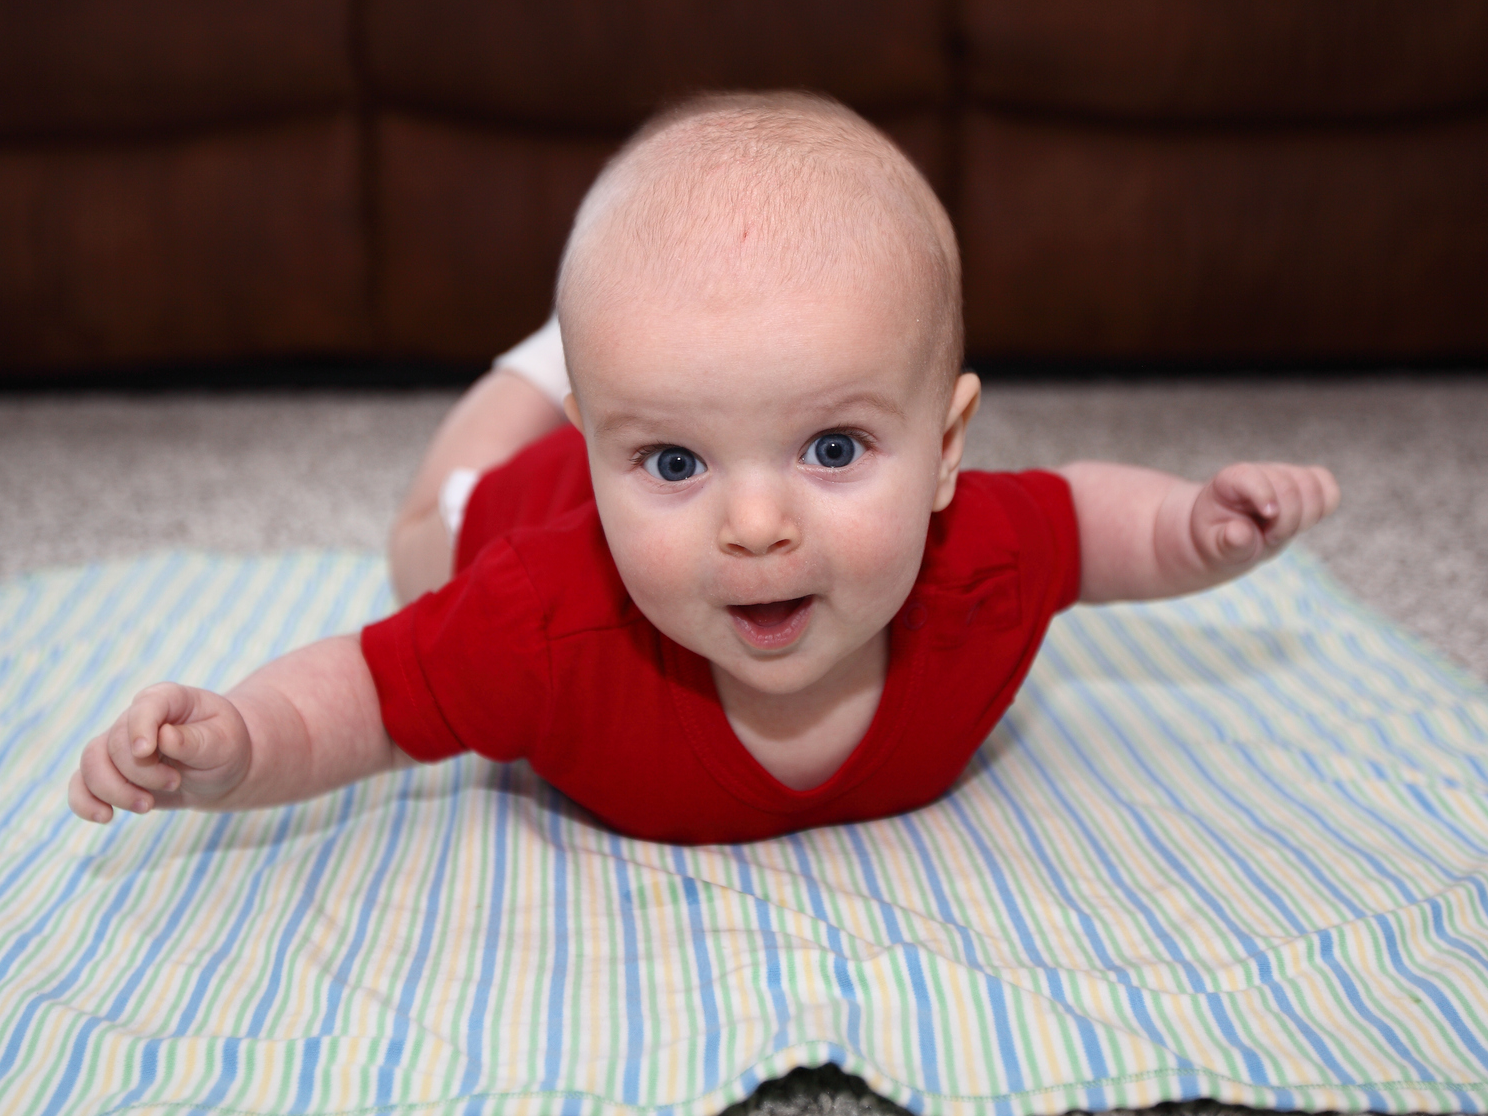 У новорожденного гипотонус: Комаровский о пониженном напряжении мышц у младенцев, признаки и лечение